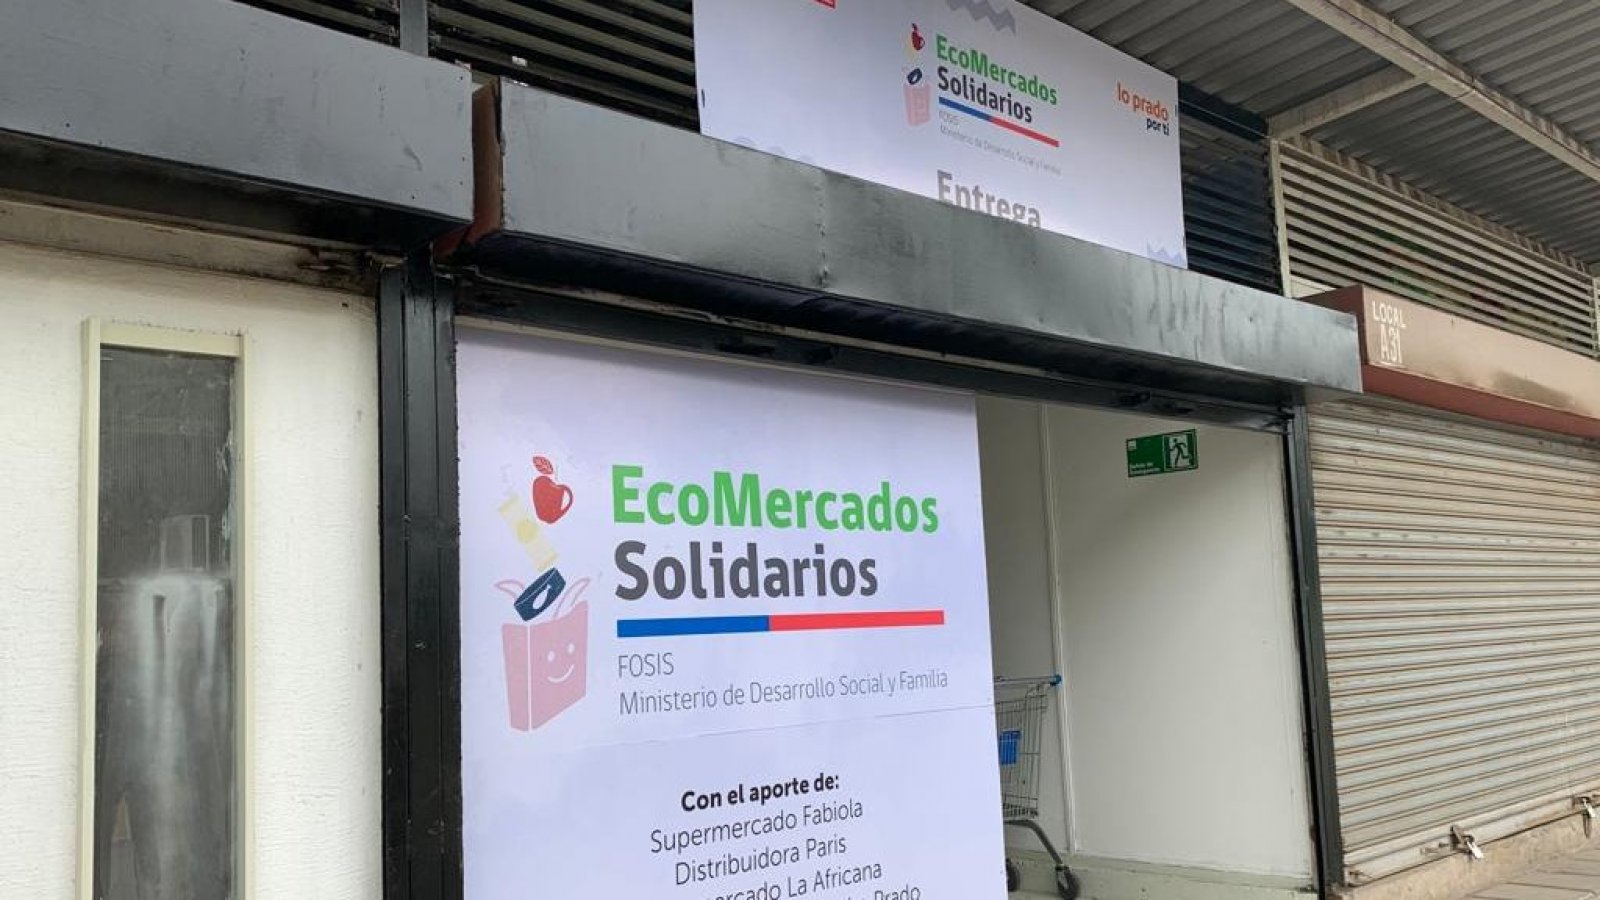 Ecomercados solidarios.